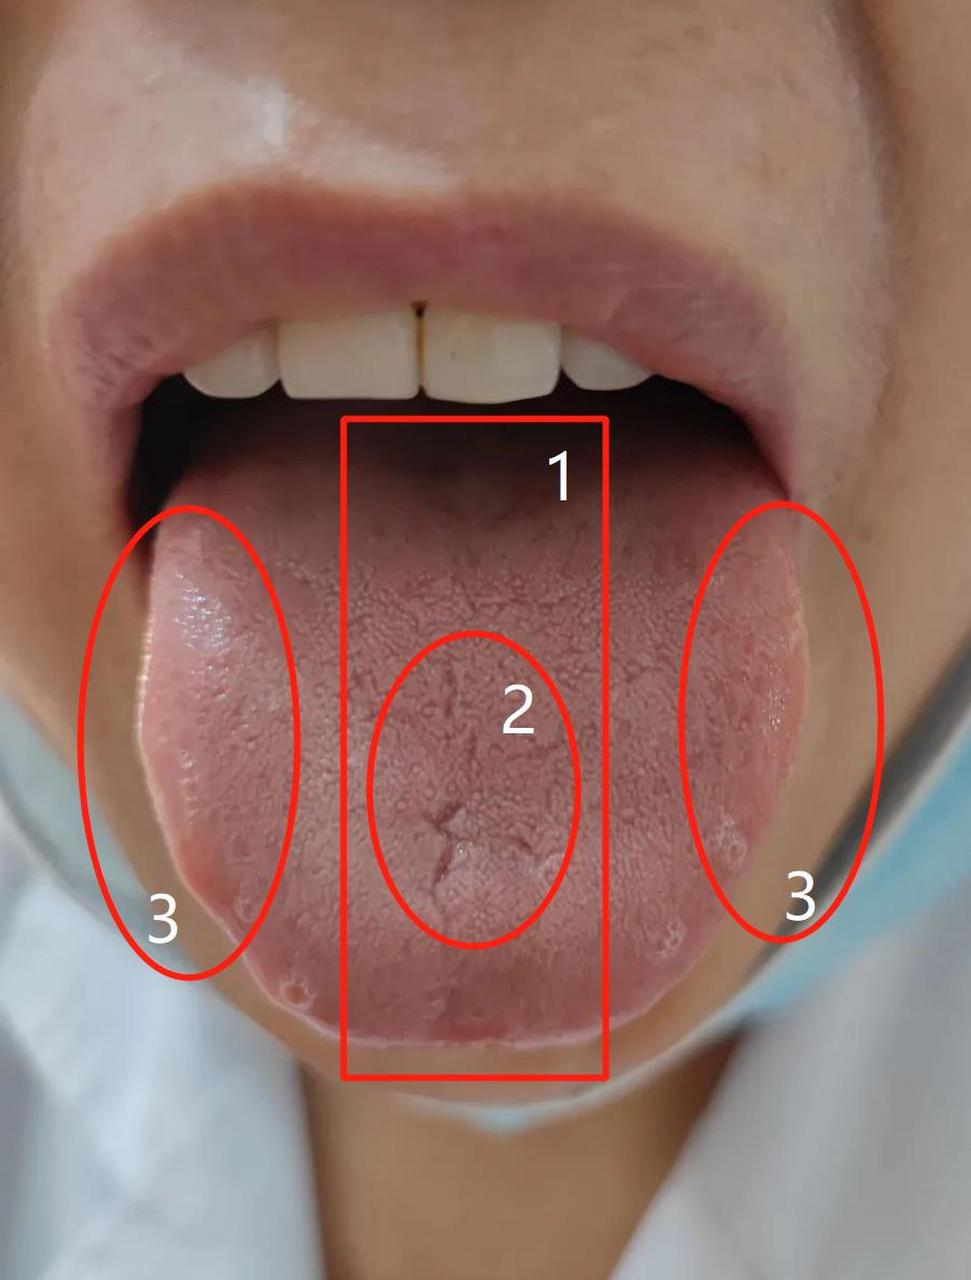 肝不好的舌头图图片